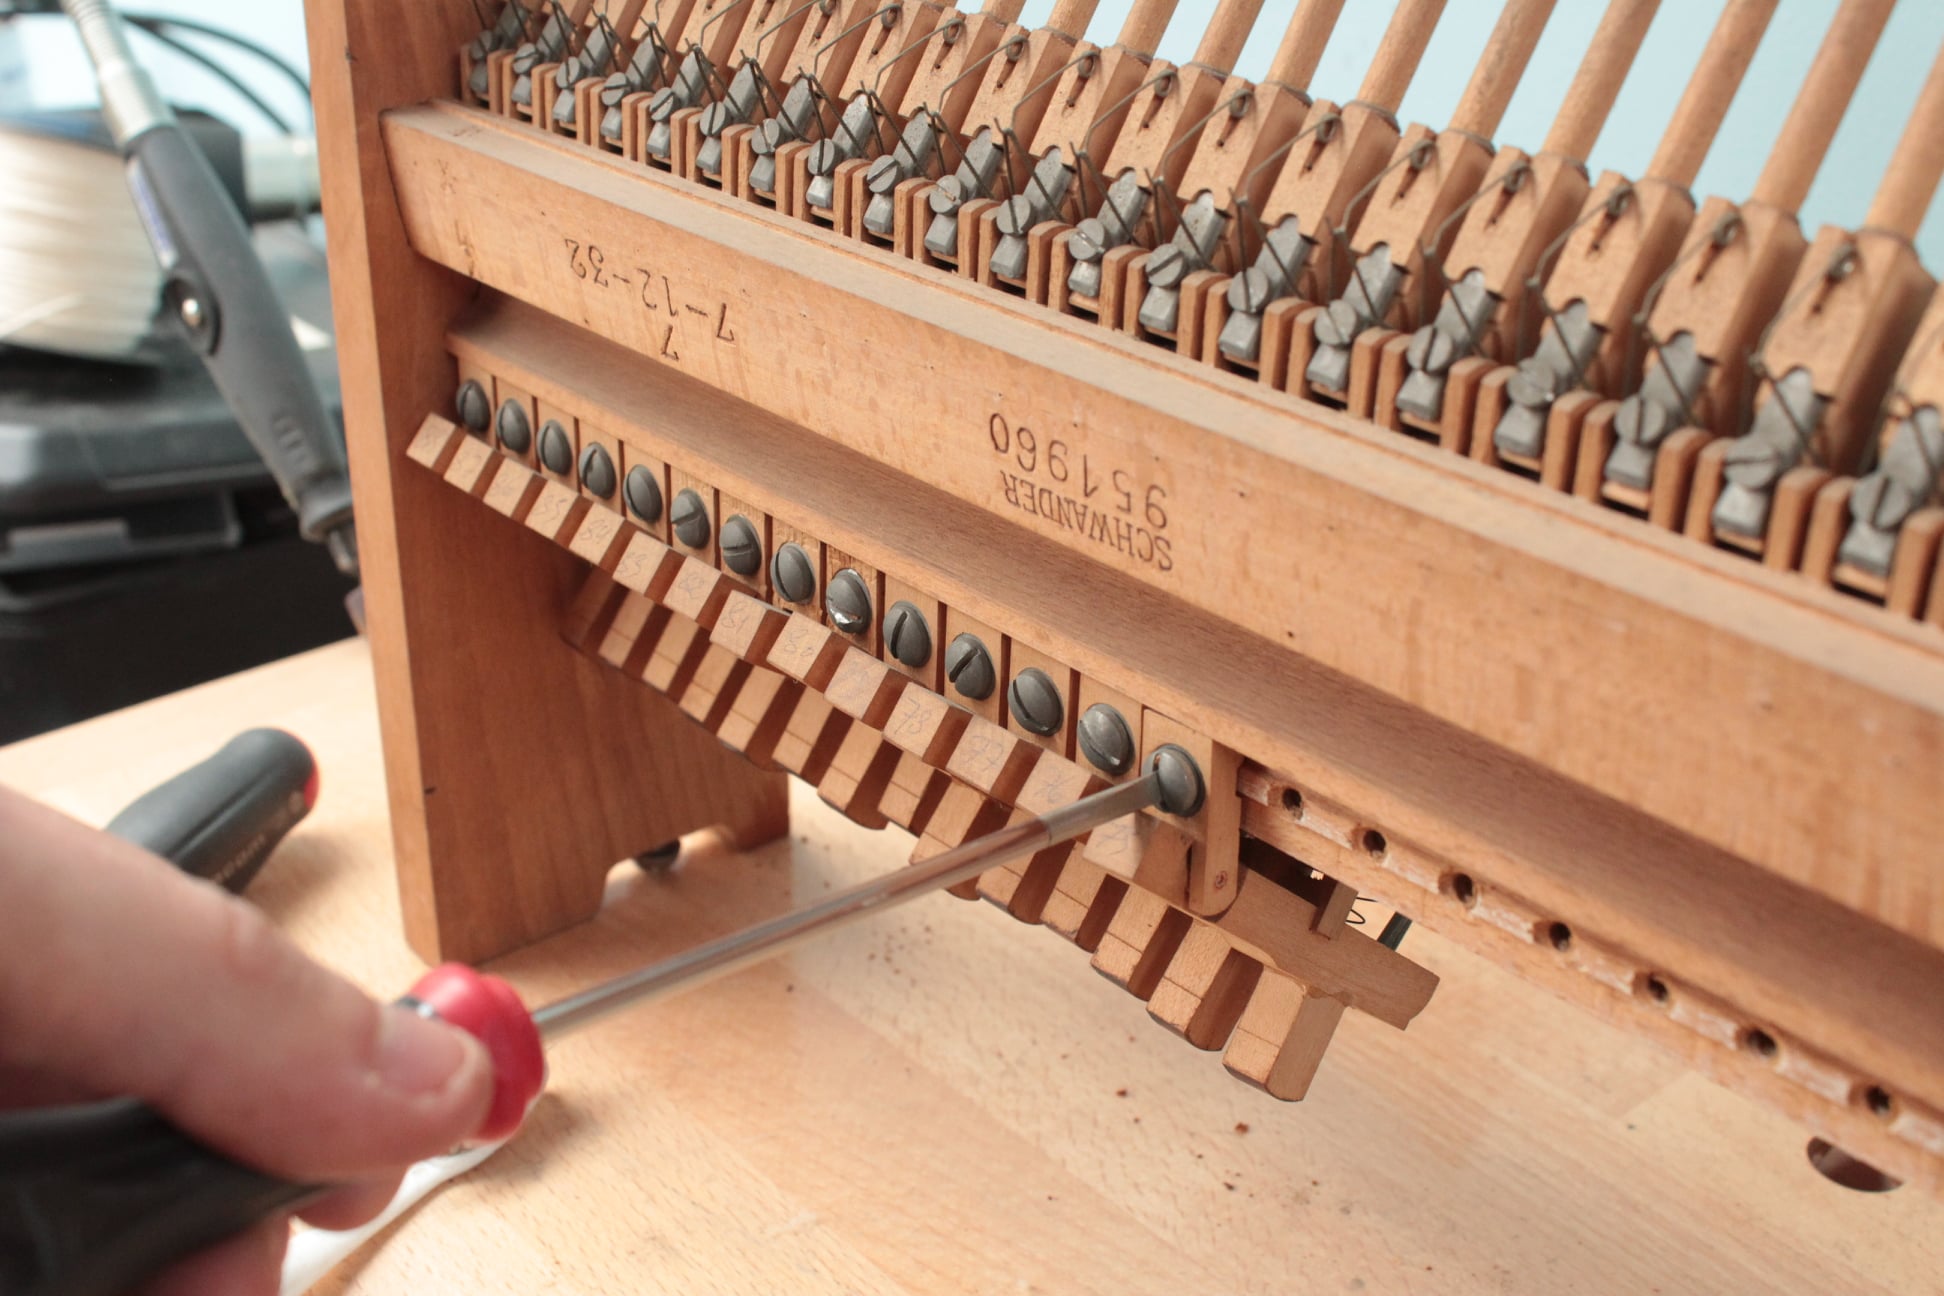 Démontage des chevalets. La date et le numéro de série de la mécanique permettent souvent de dater un piano en l'absence d'informations sur la marque elle-même.